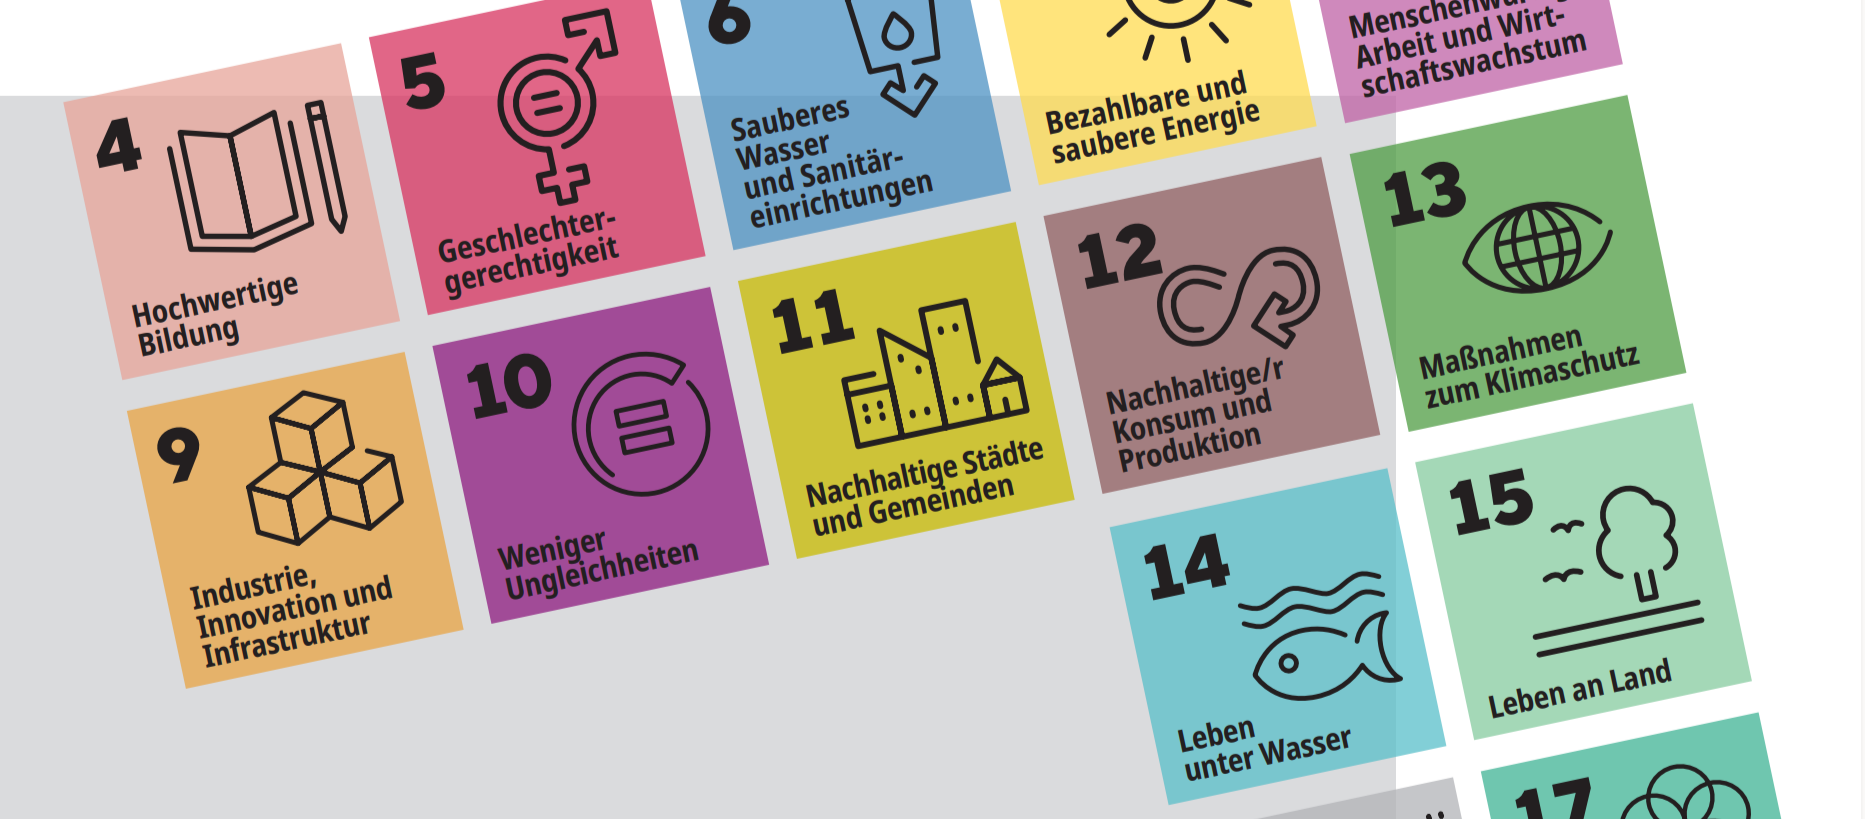 Das Bild zeigt die 17 SDGs die Bestandteil zur Erreichung der Nachhaltigkeit sind